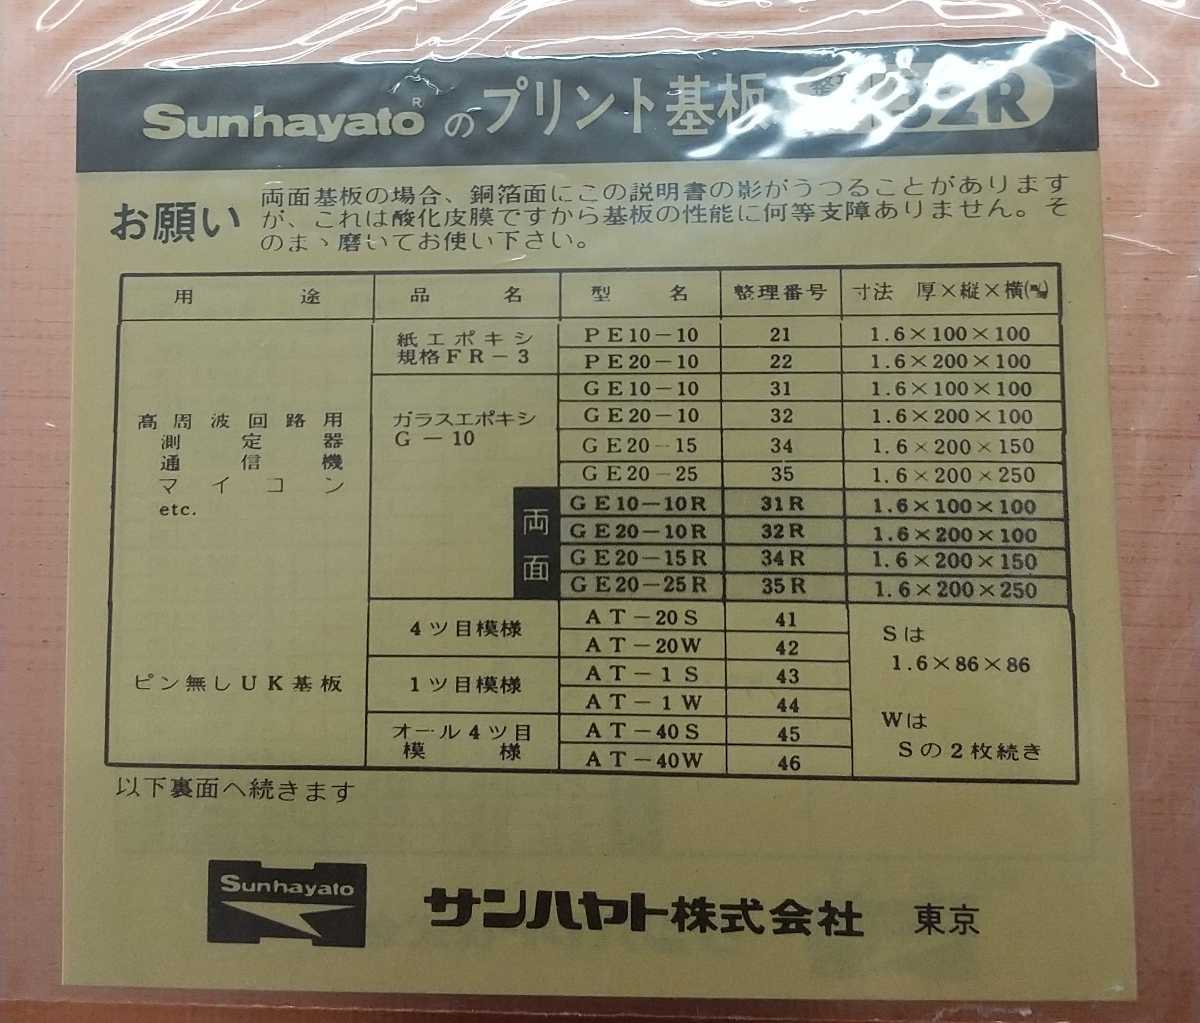  солнечный - yato печатная плата R32 4 листов 